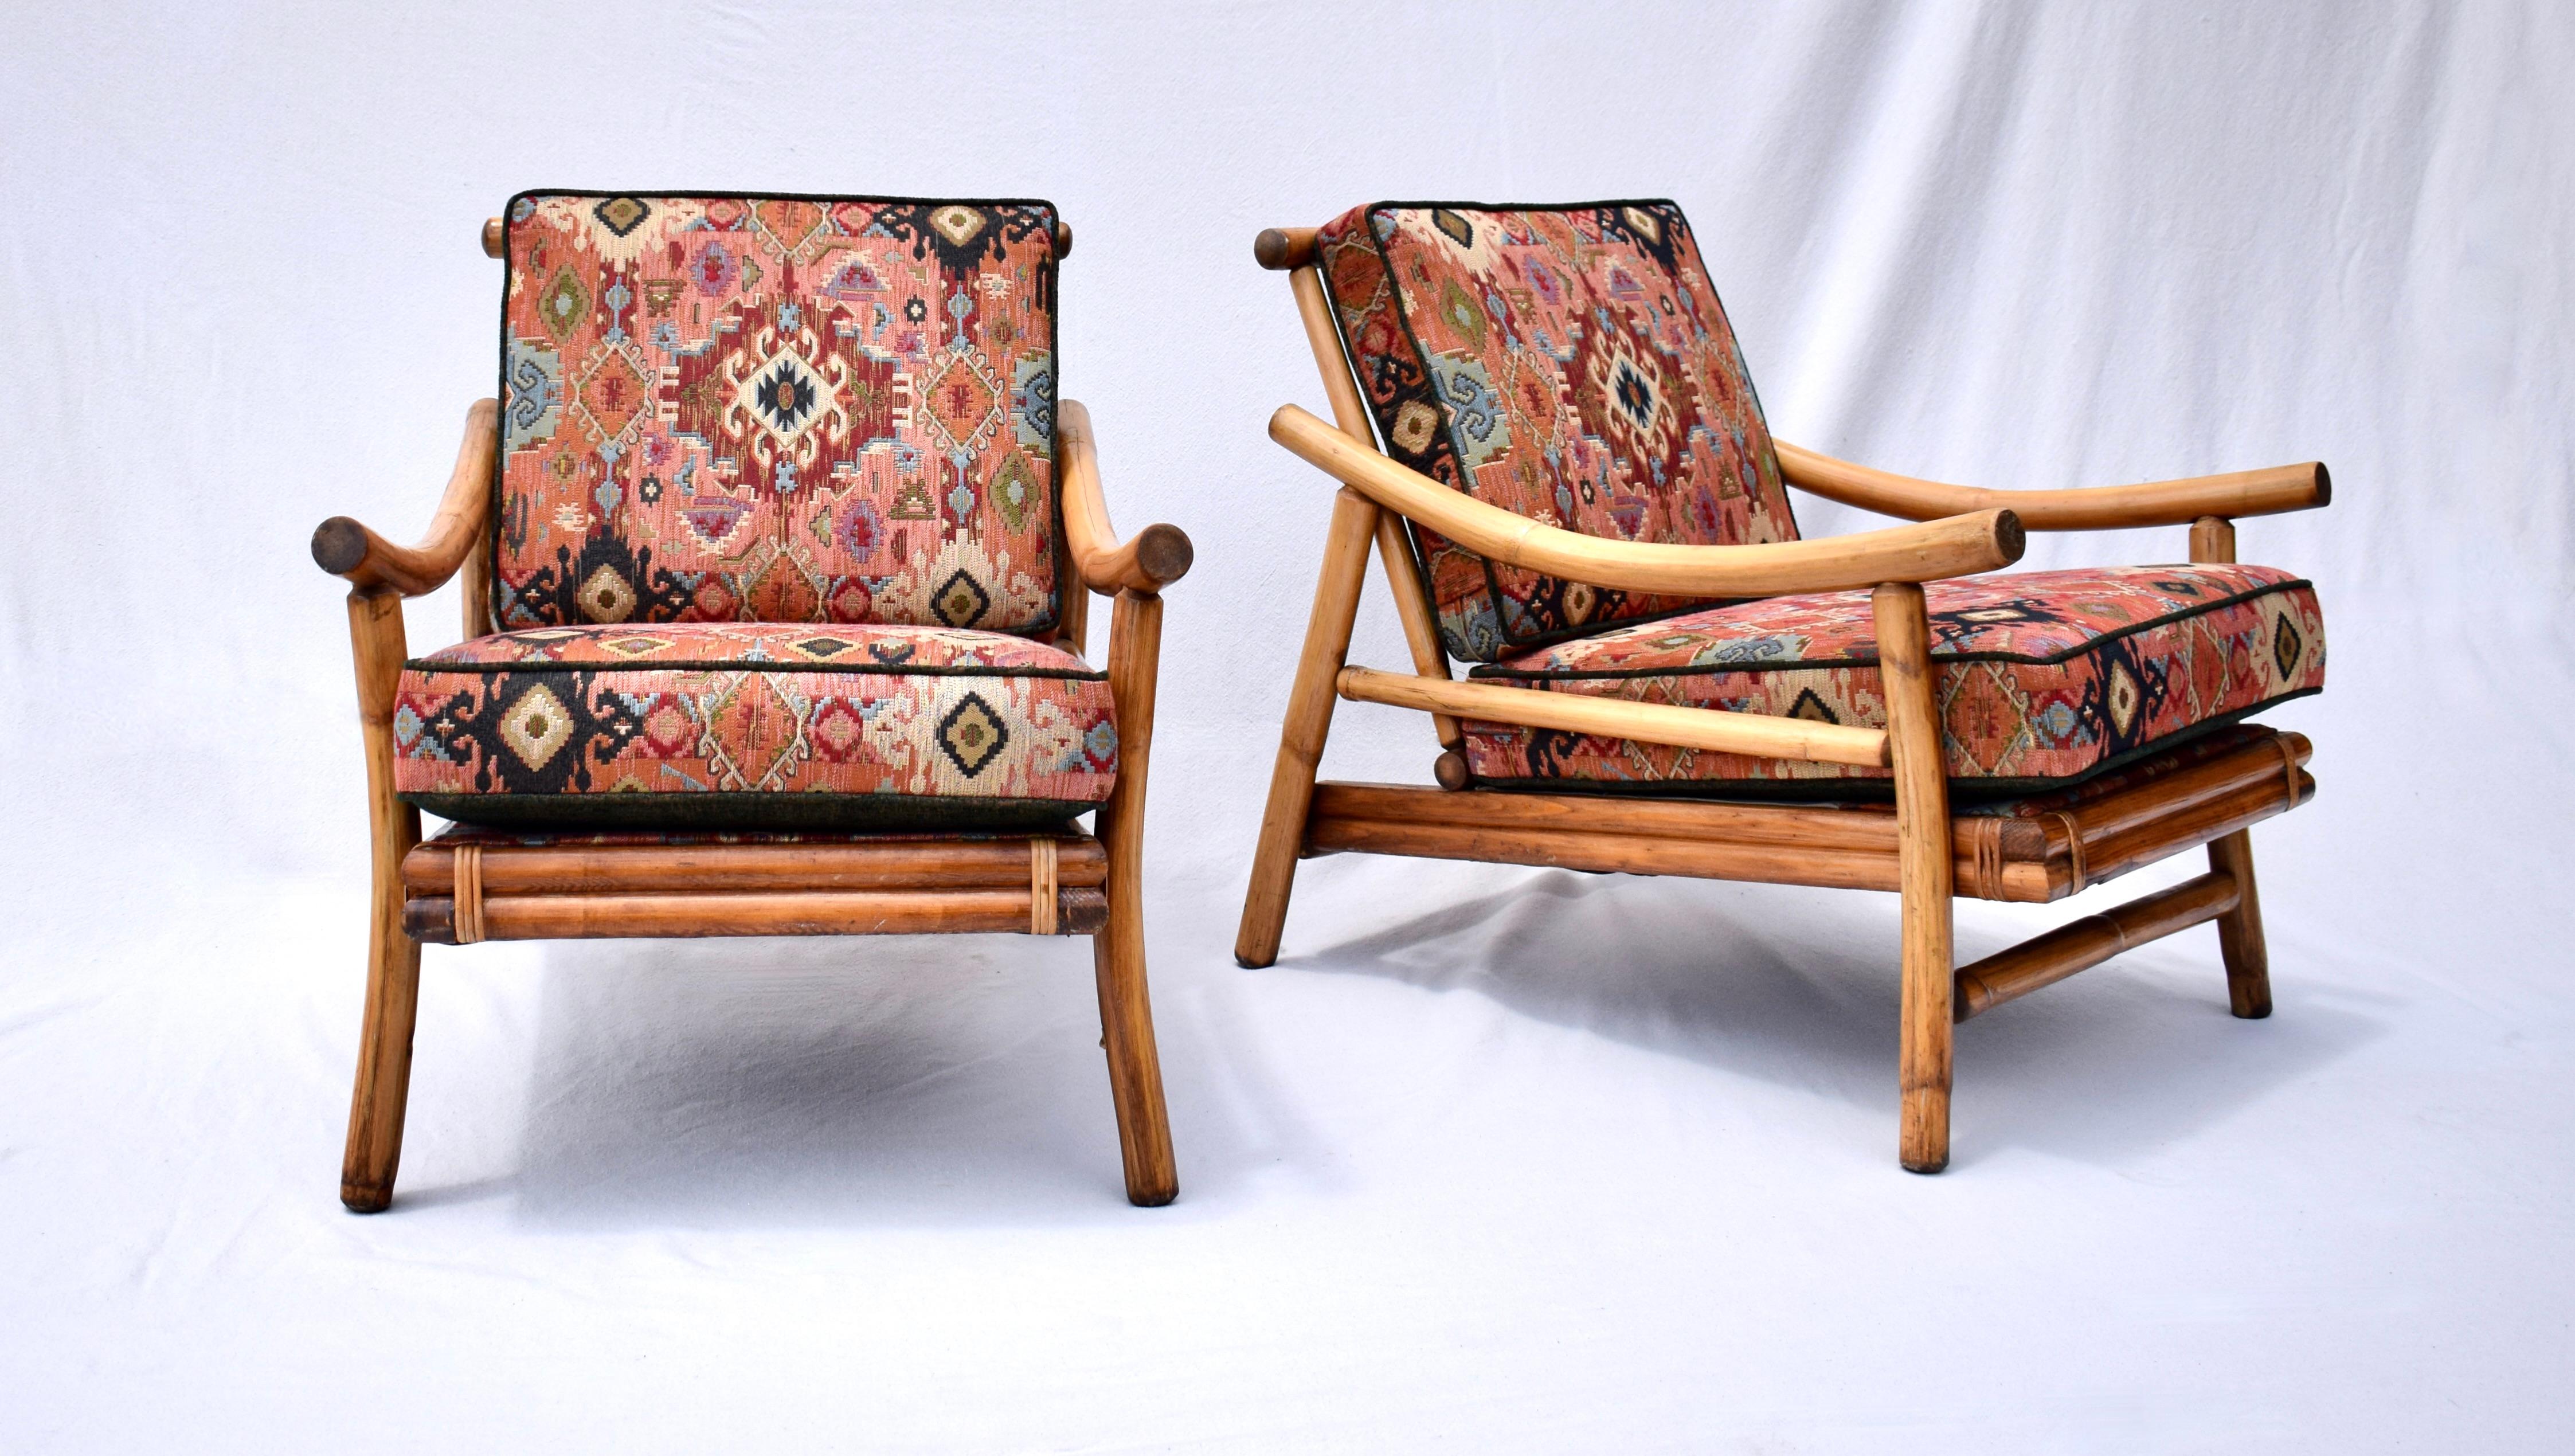 Ficks Reed Pagode Stil Lounge Stühle & Tisch Set von Rattan und Bast mit Hartholz Sitze und original Feder Konstruktion. Das Set befindet sich in einem wunderbaren Vintage-Zustand und wurde von Hand detailliert bearbeitet, wobei die warme, glänzende